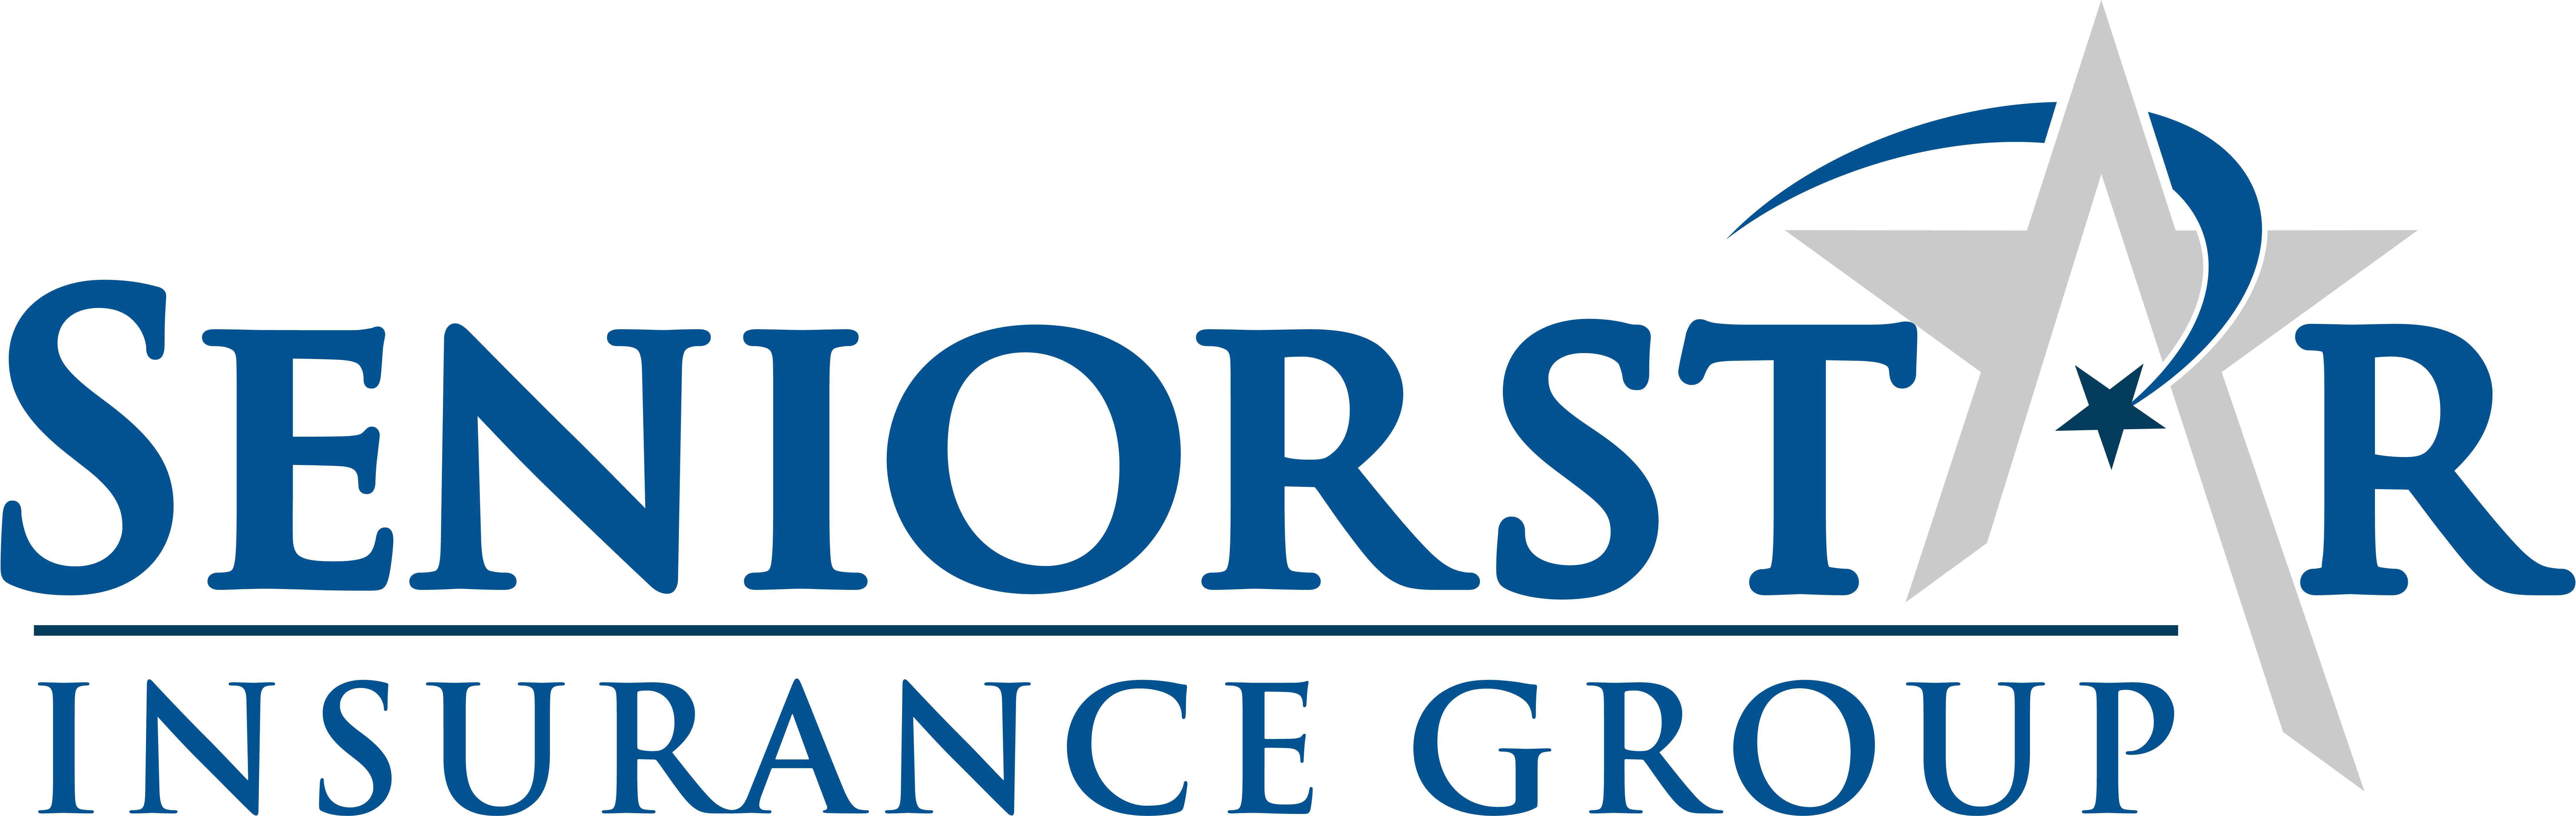 Seniorstar Insurance Group